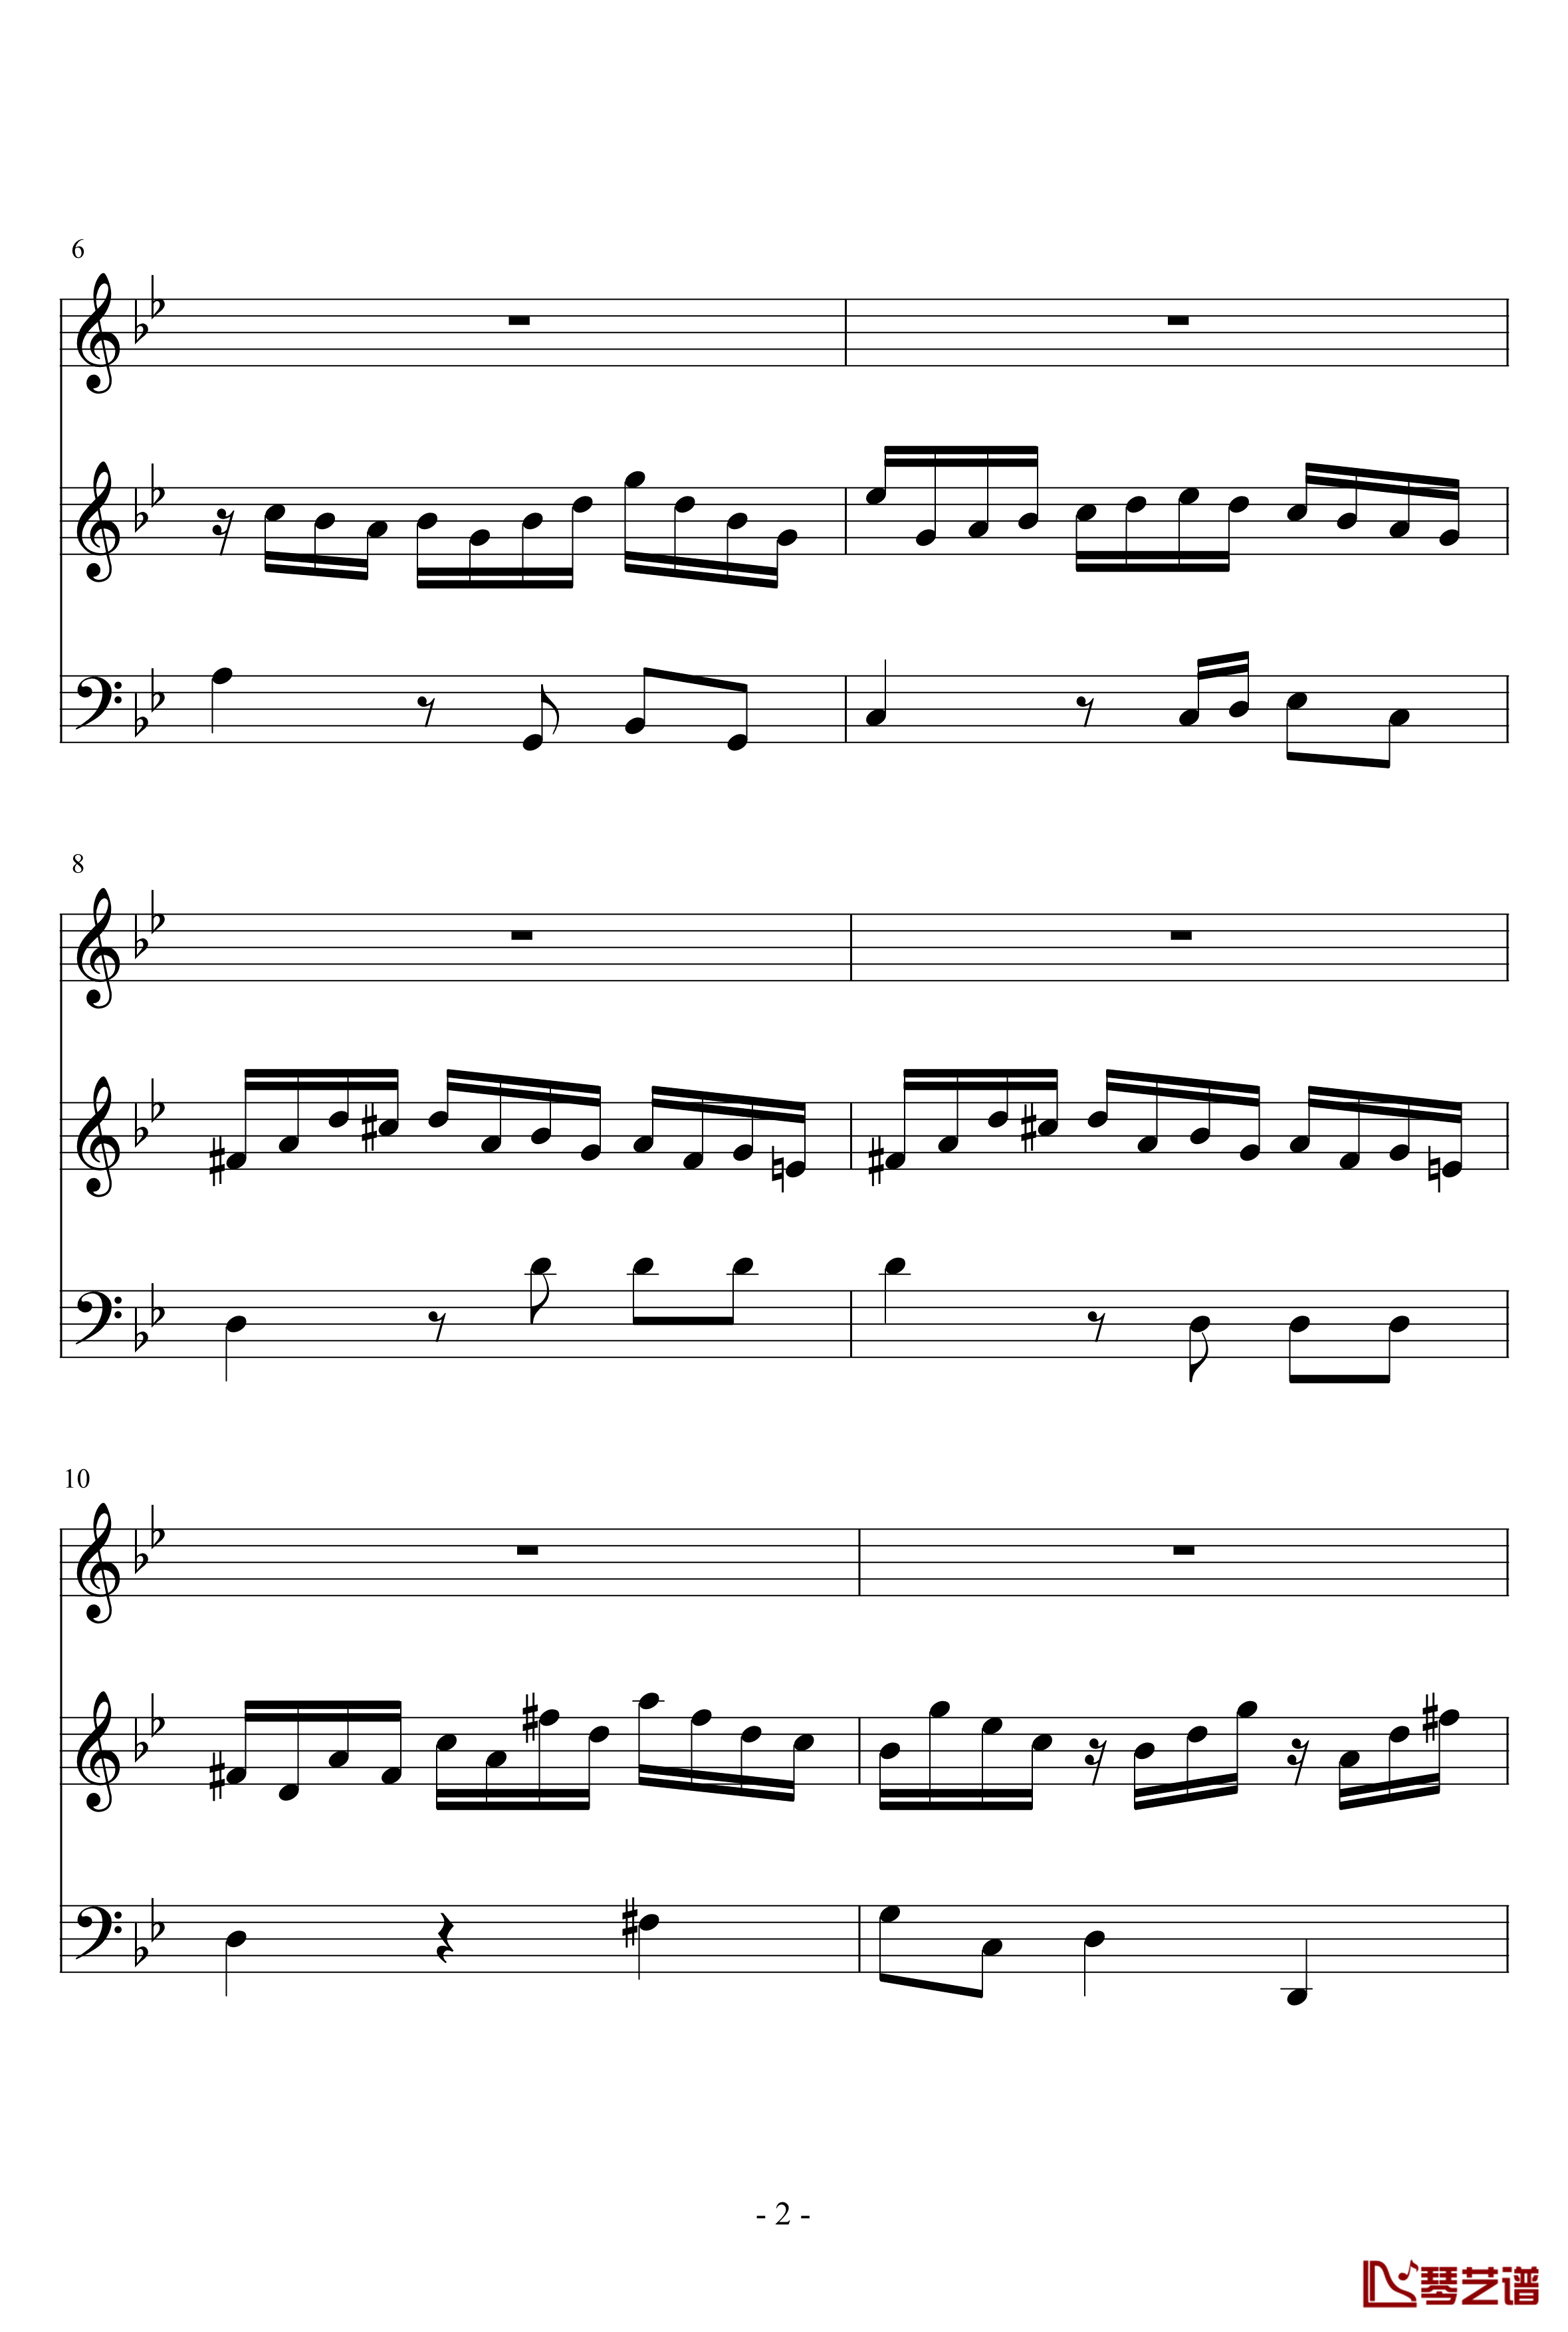 长笛与羽管键琴奏鸣曲第一乐章钢琴谱-巴赫-P.E.Bach2